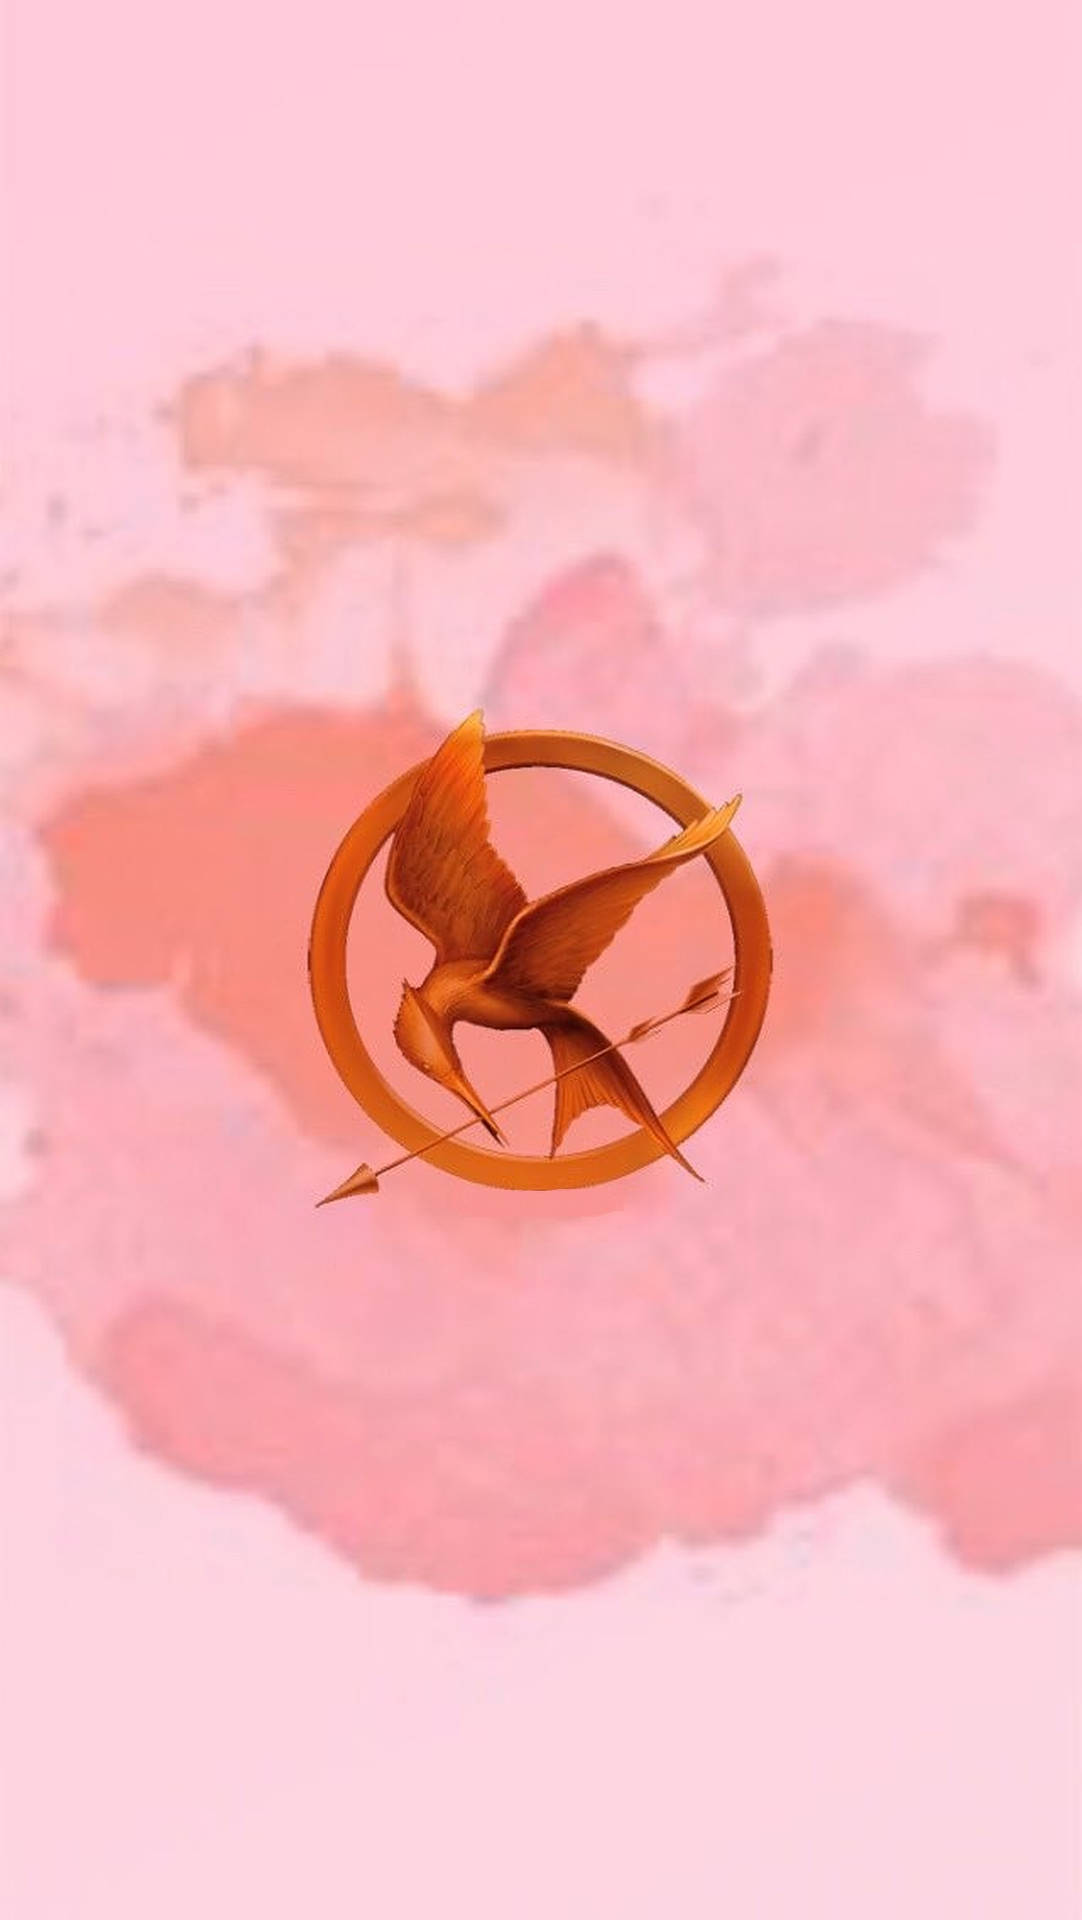 The Hunger Games Aesthetic Logo Wallpaper